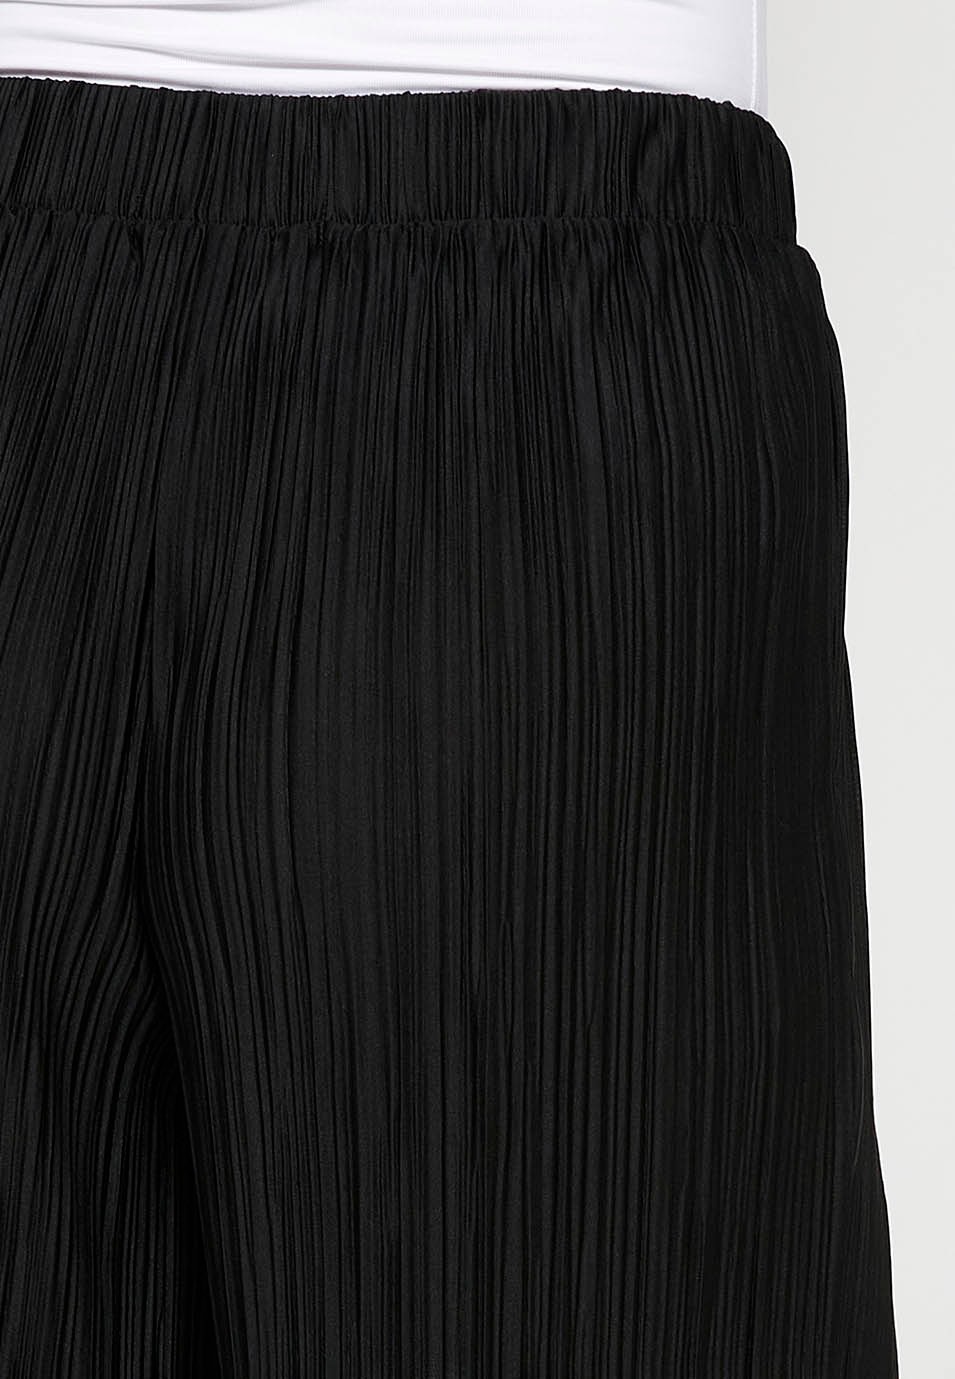 Pantalons llargs lleugers, cintura engomada, tela prisada color negre per a dona